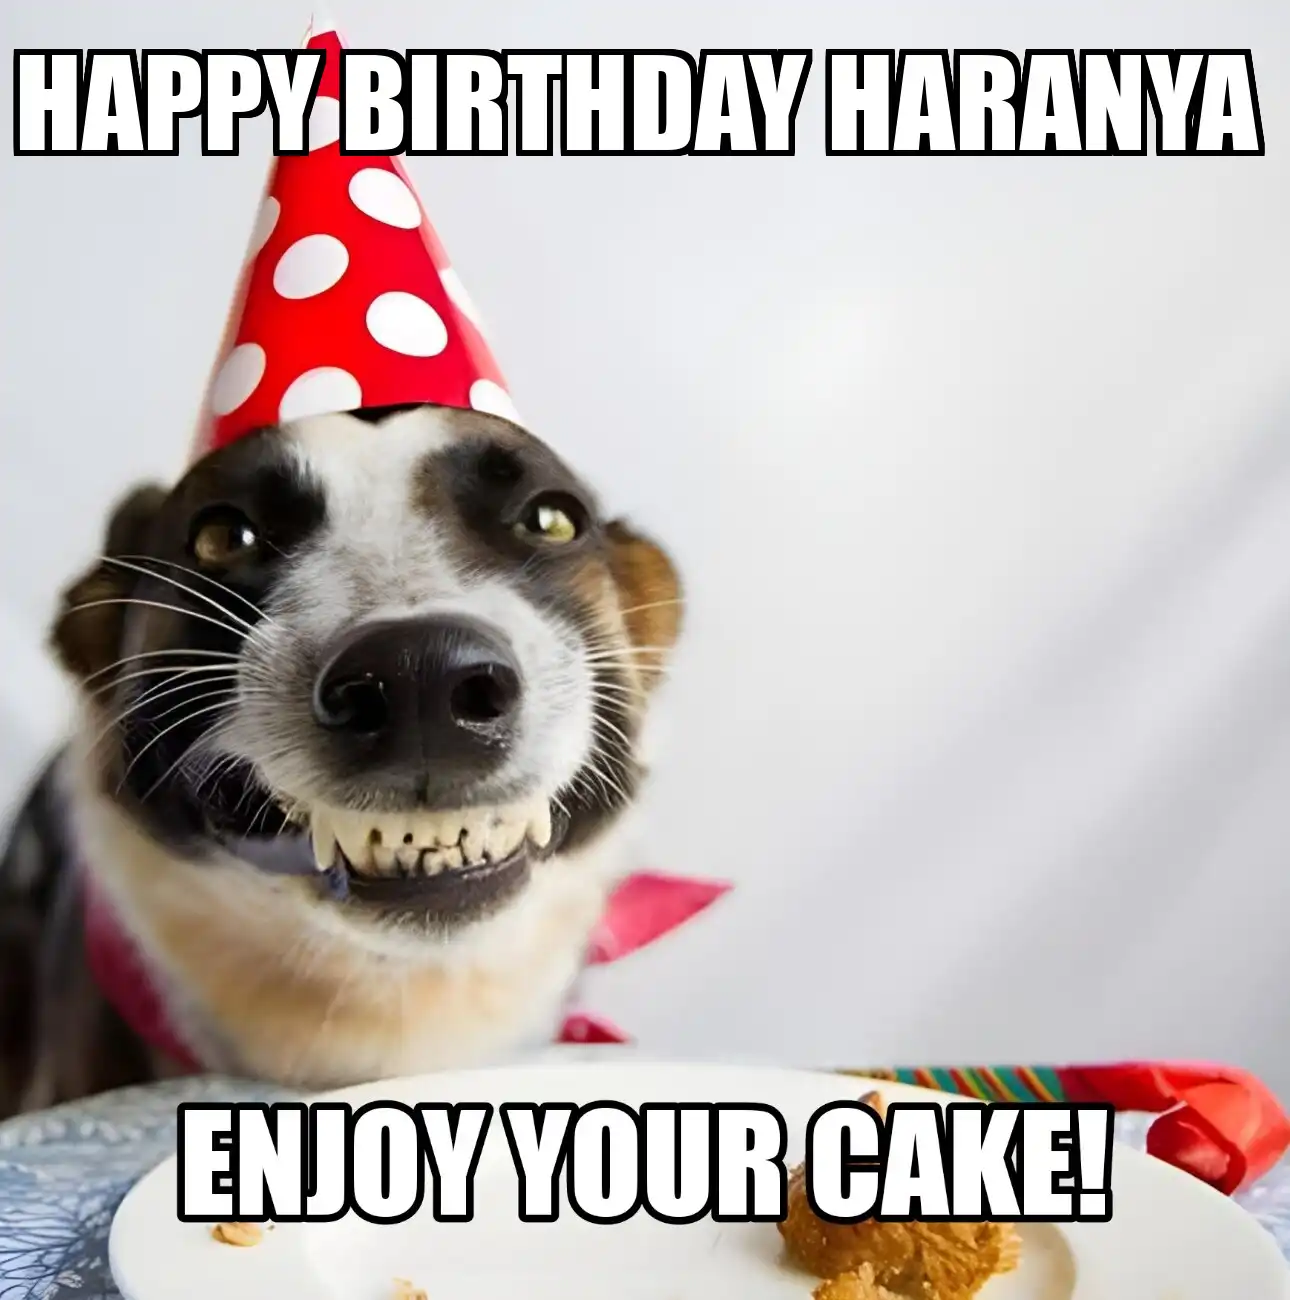 Happy Birthday Haranya Enjoy Your Cake Dog Meme